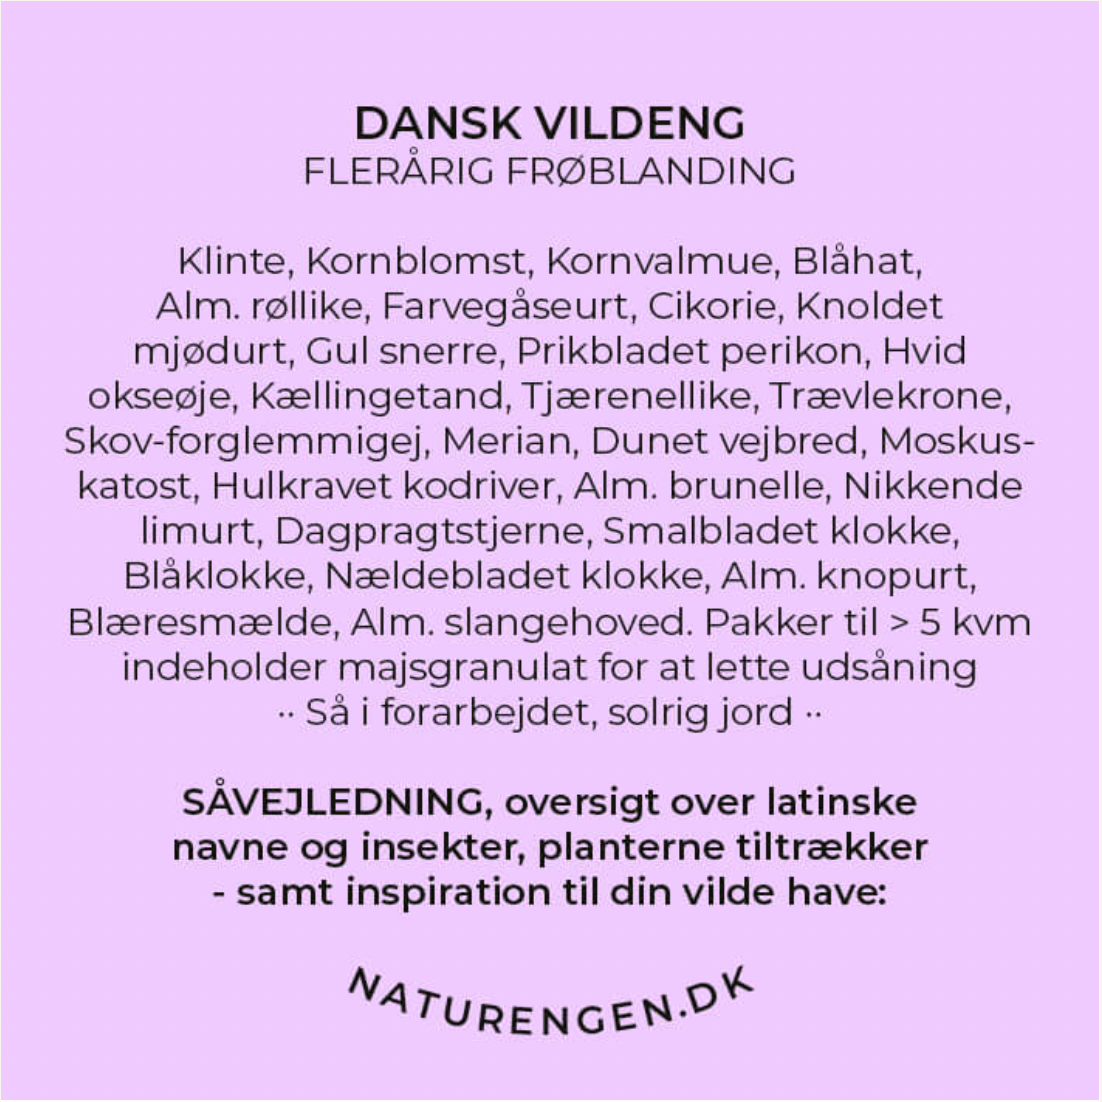 Dansk Vildeng 20 kvm.